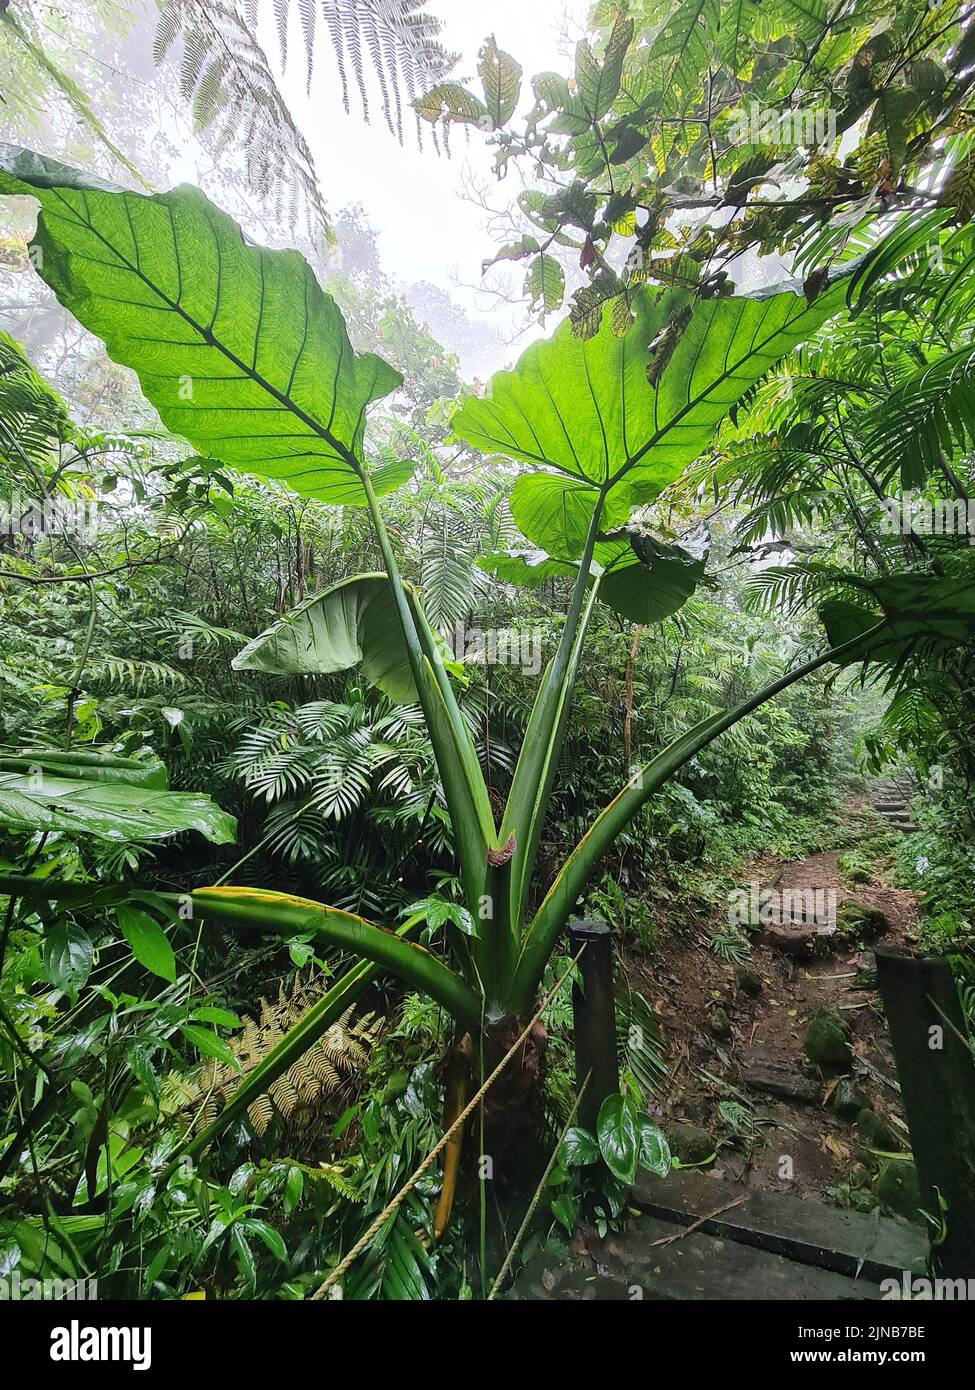 Pflanze mit großen Blättern im Dschungel Hintergrund an regnerischen nebligen Tag Stockfoto